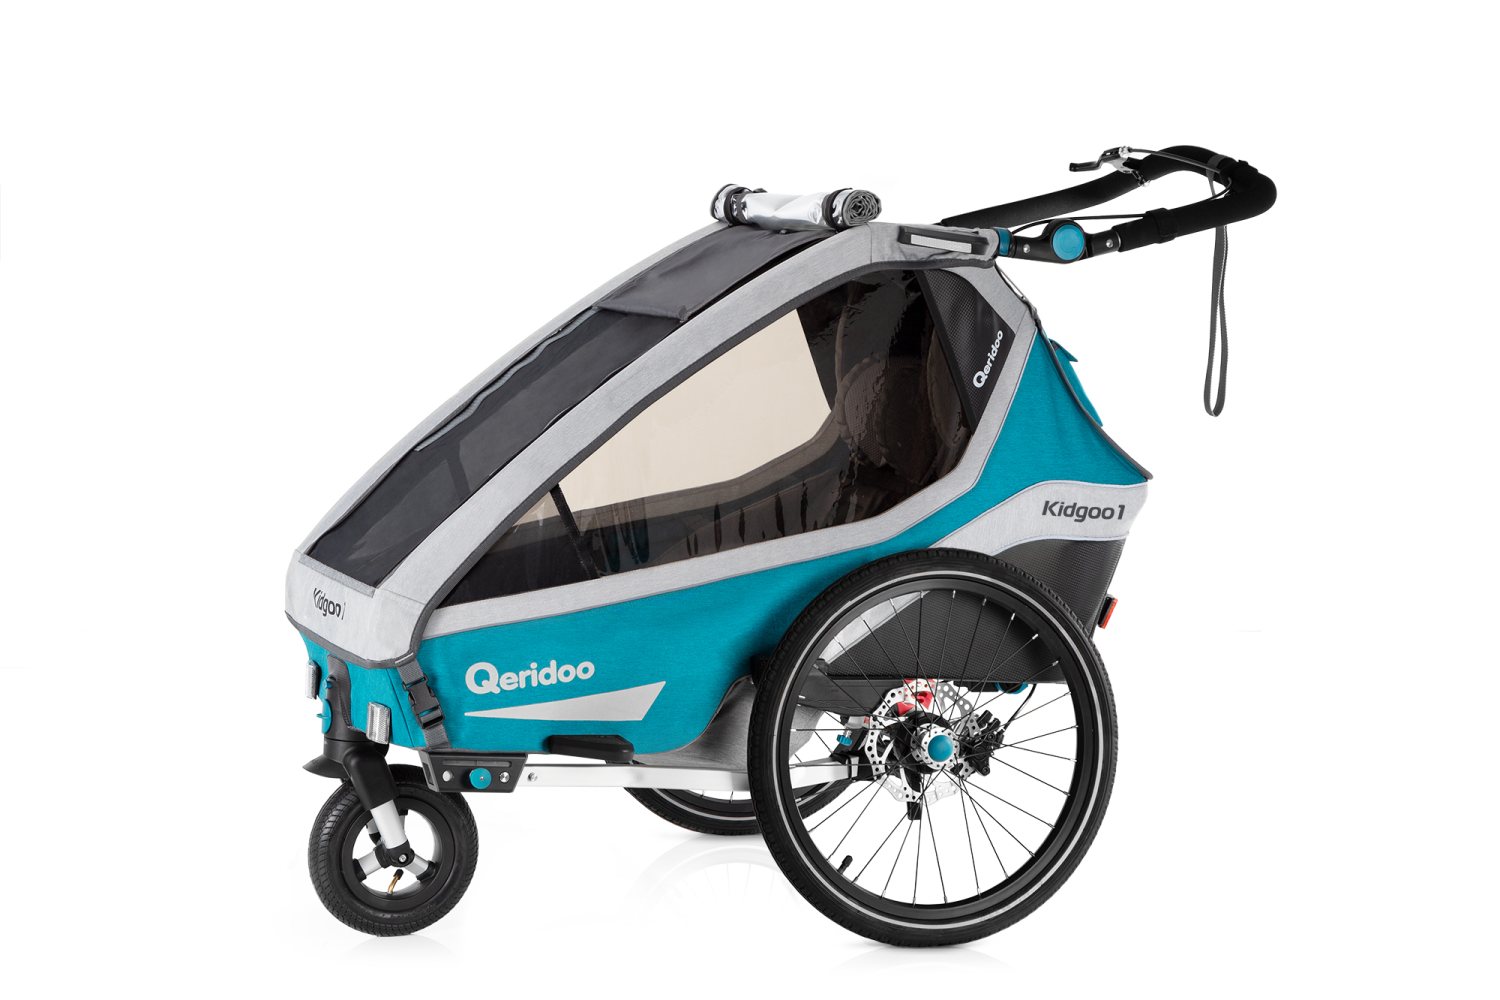 Rad Qeridoo Kidgoo1 Sport Einsitzer Fahrradanhänger für Kinder bei Amazon